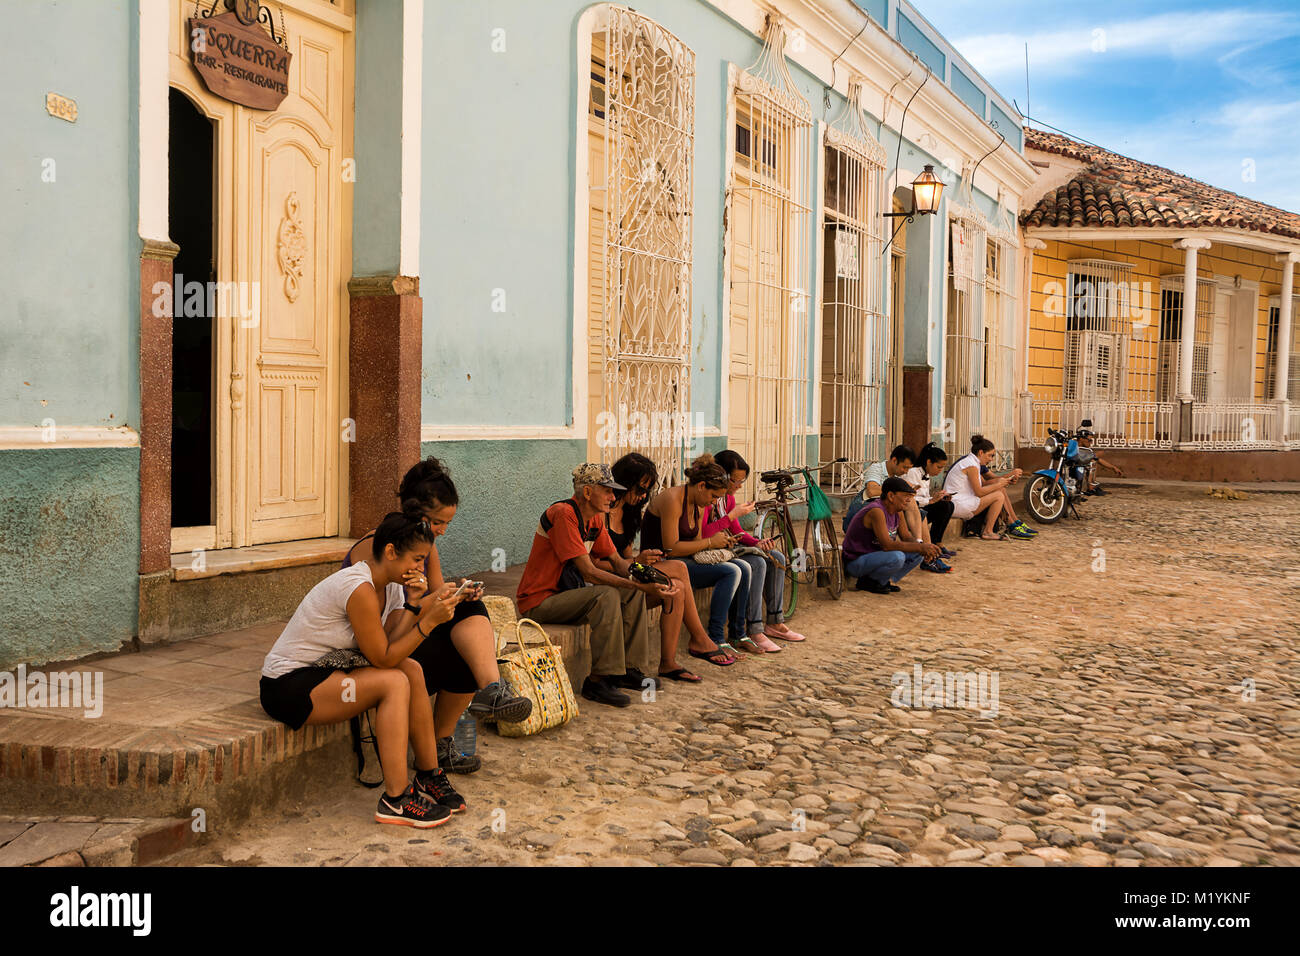 Trinidad, Cuba - 8 décembre 2017 : Les gens assis, le surf sur internet uniquement présent dans le carré en wi-fi Banque D'Images